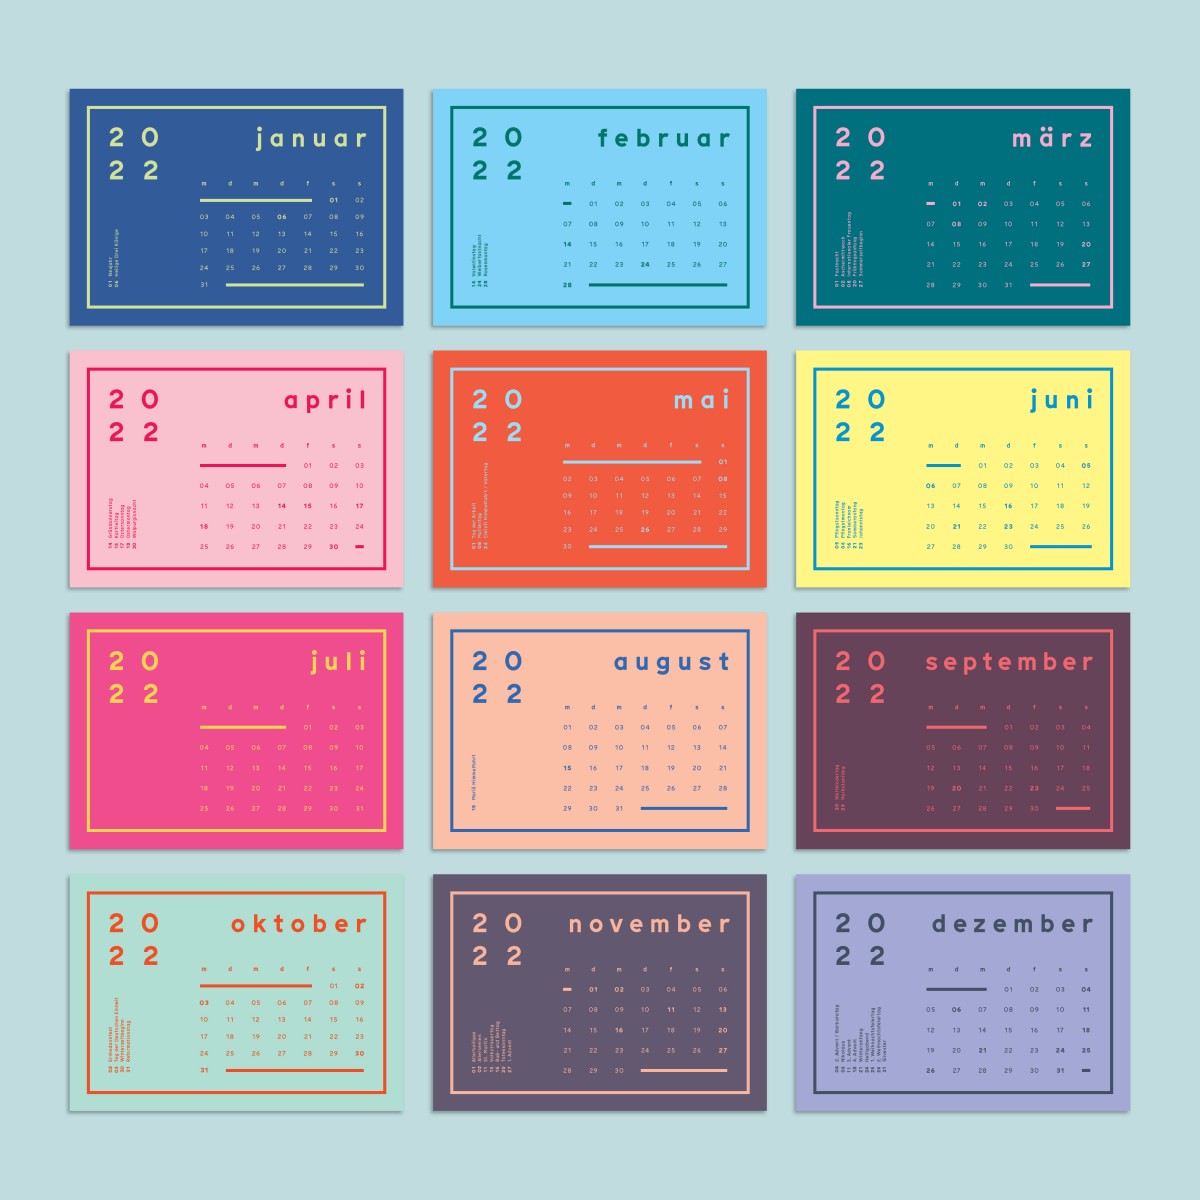 Postkartenkalender inkl. Kartenhalter aus Holz / Tischkalender / frau rippe